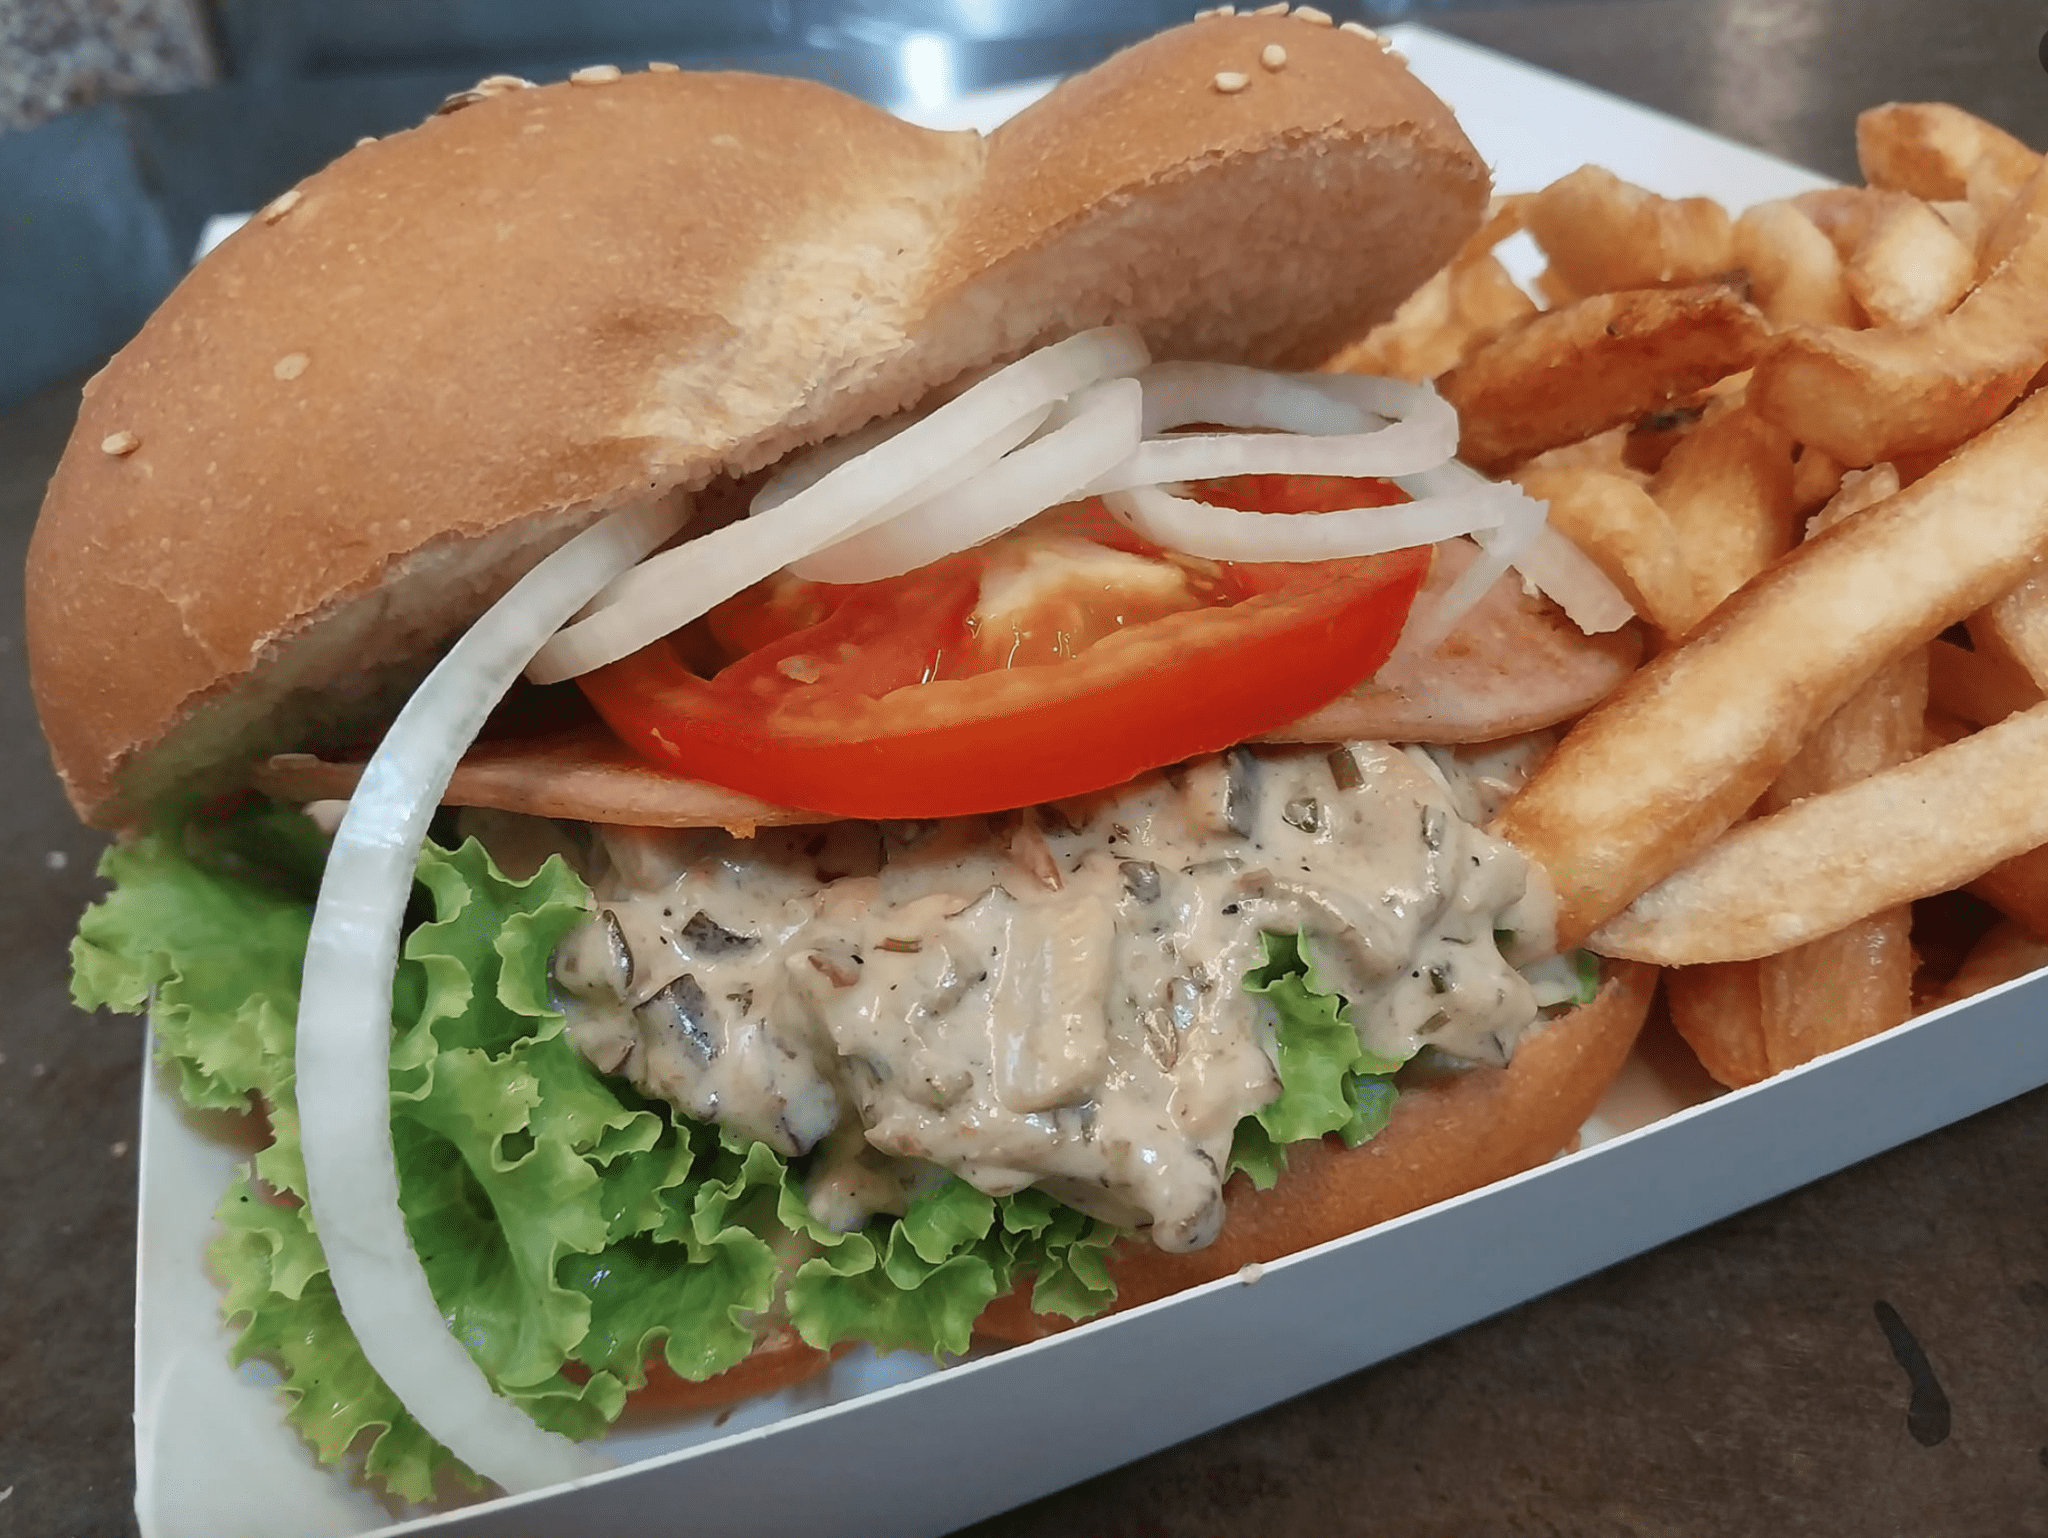 Découvrez les meilleurs endroits pour manger des burgers à l'île Maurice